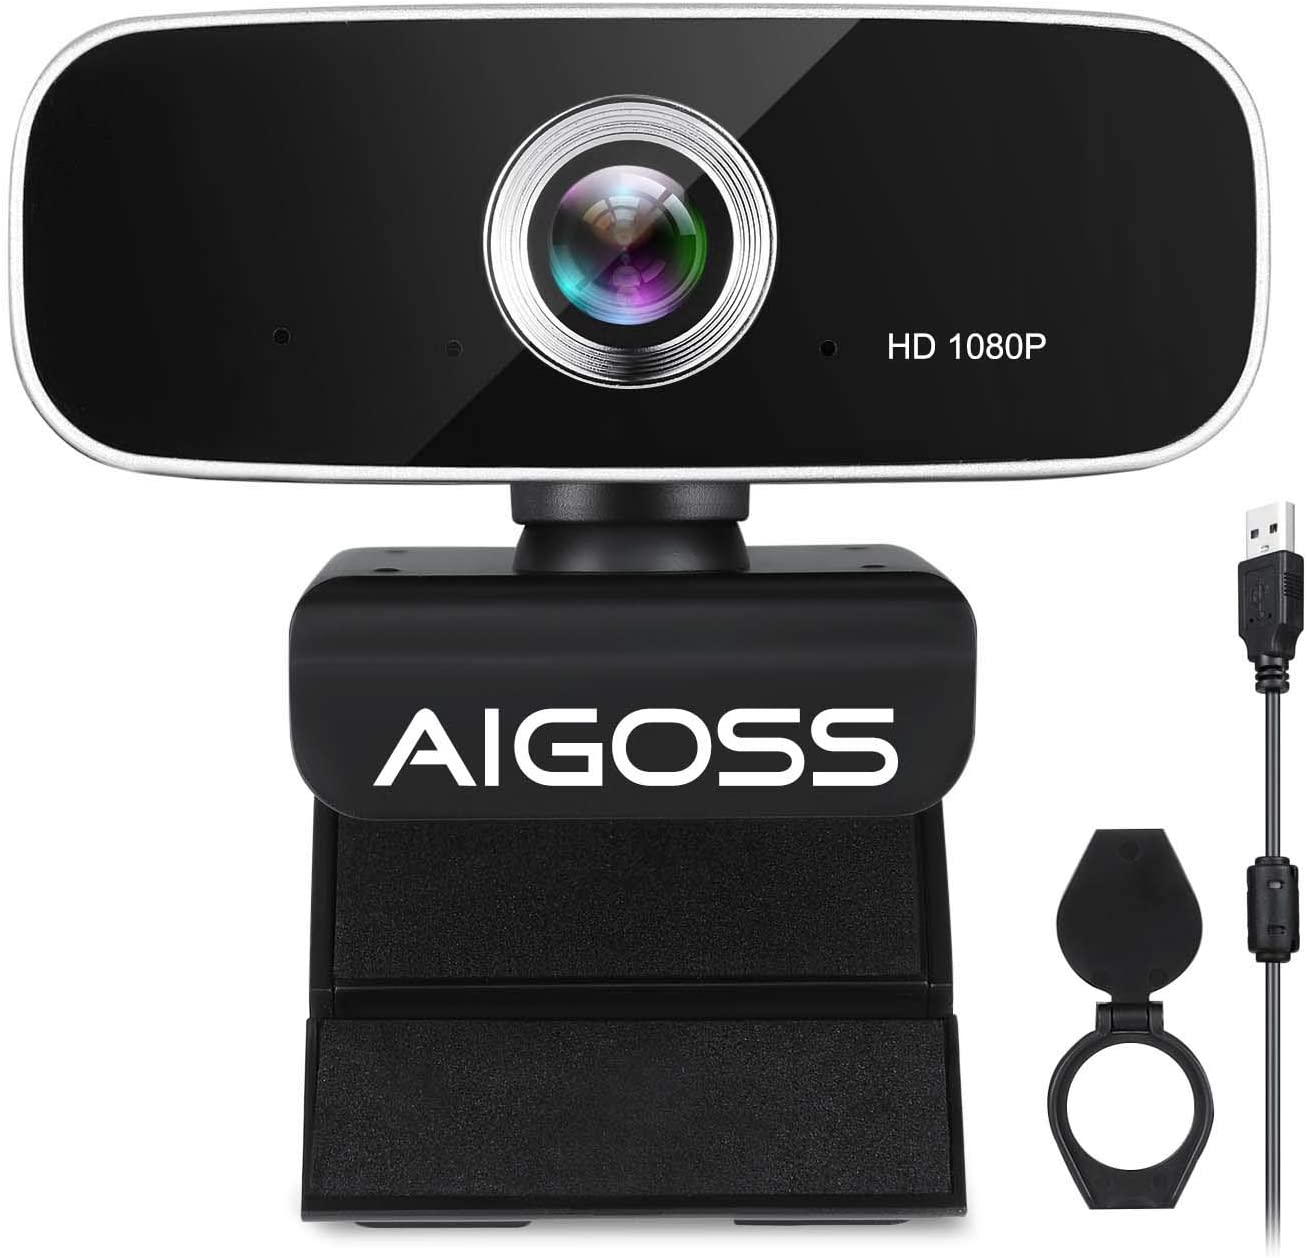  7. Aigoss Webcam Spy Cameras 